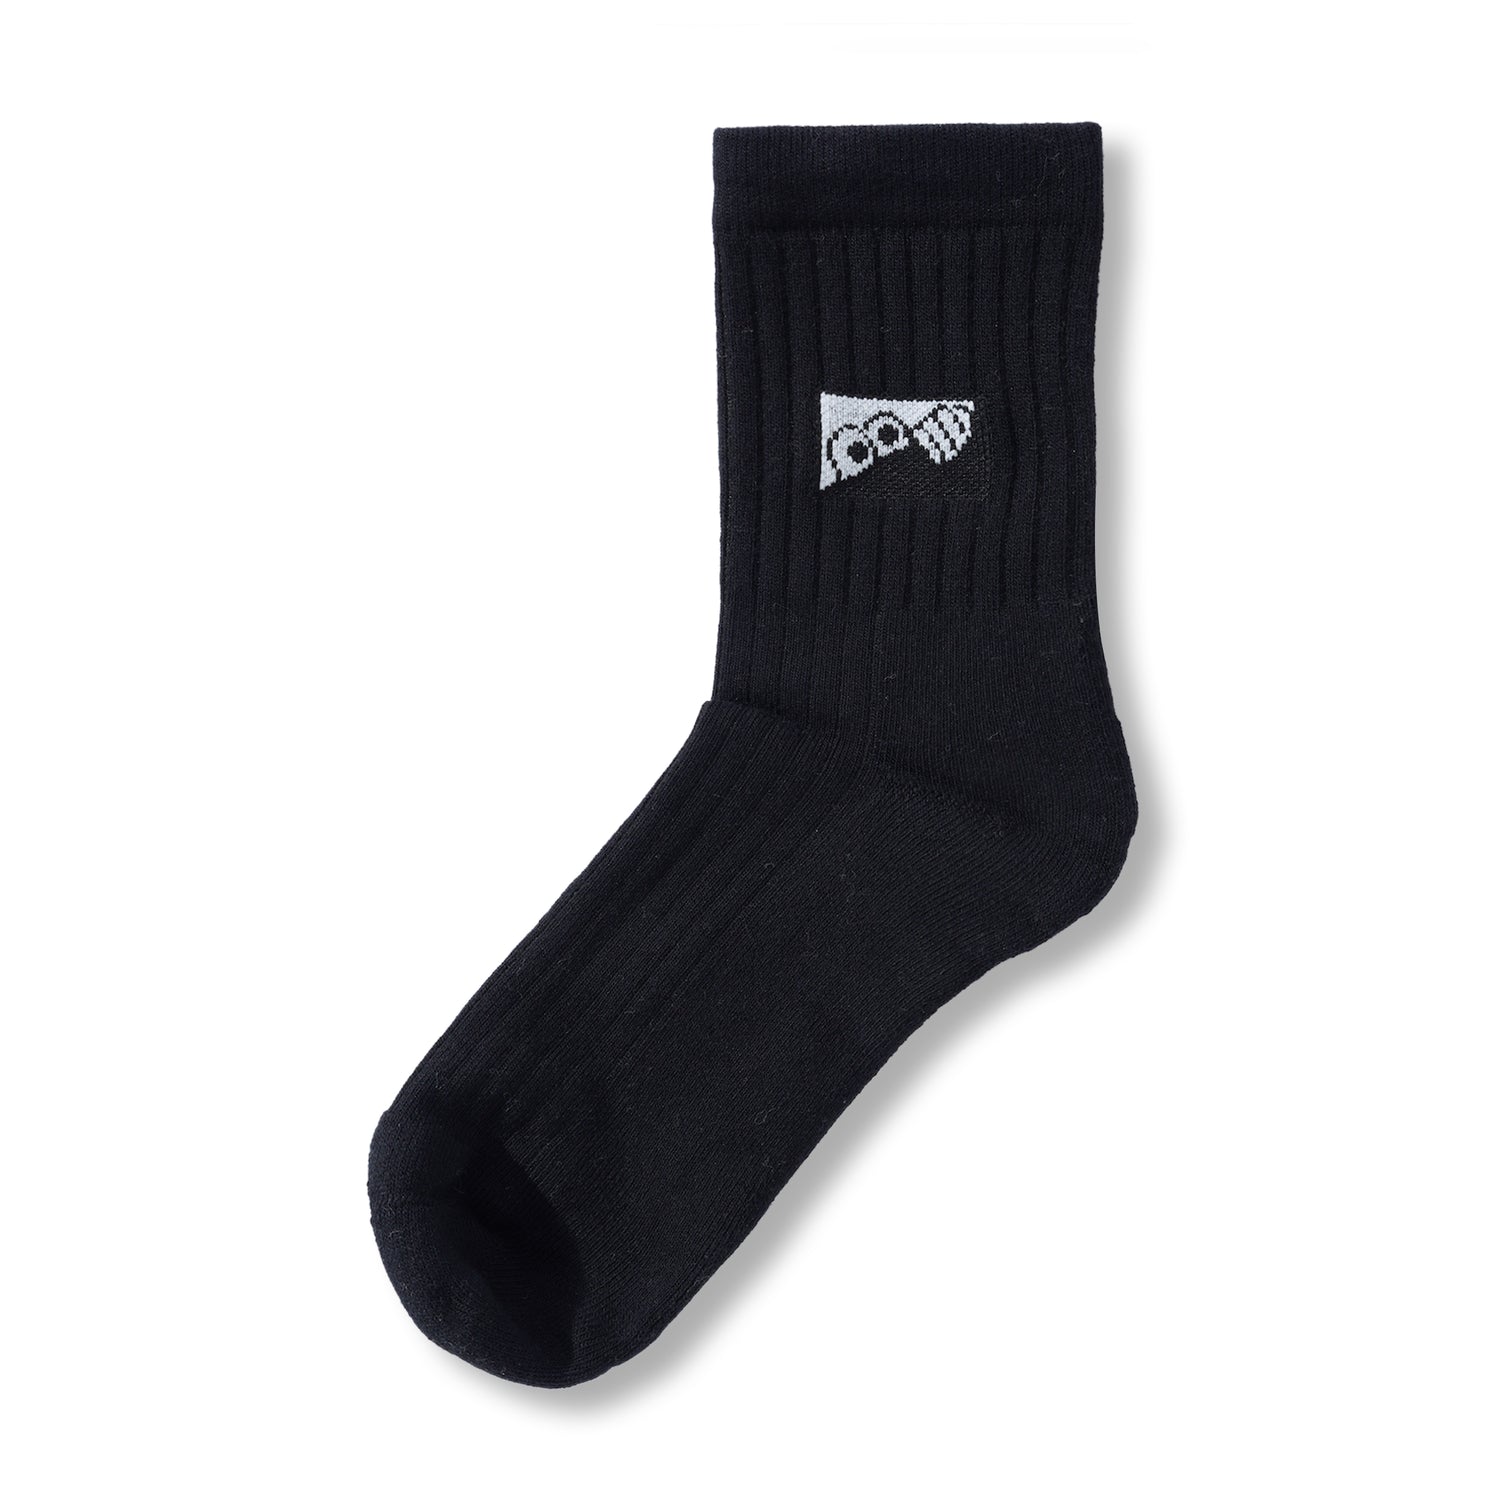 Heel Tab Socks, Black